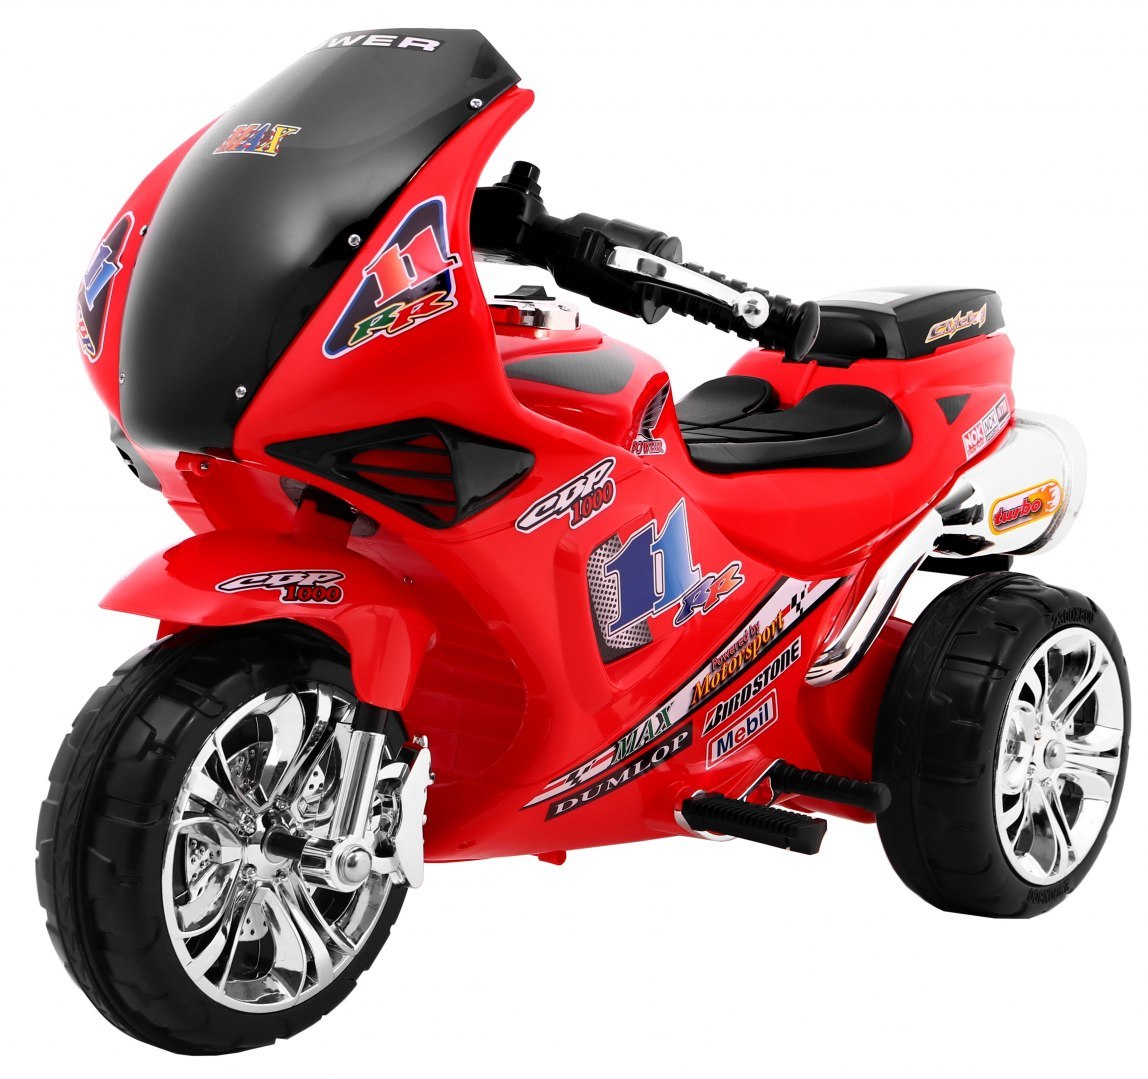 mamido Detská elektrická motorka RR1000 červená